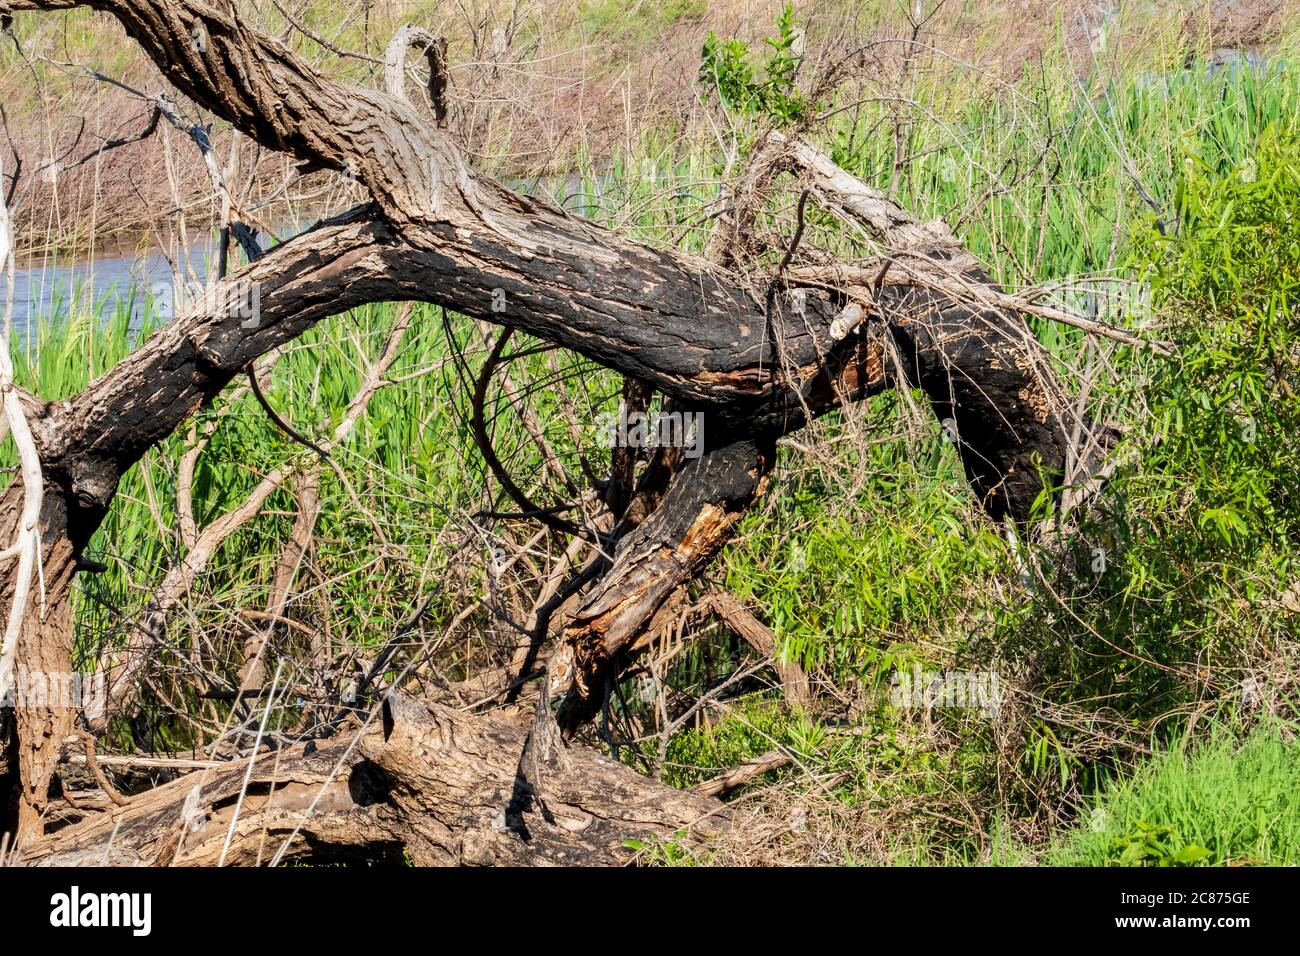 Un vieux cotonwood de l'est, Populus deltoides, abattu et charmé par la foudre. Oklahoma, États-Unis. Banque D'Images